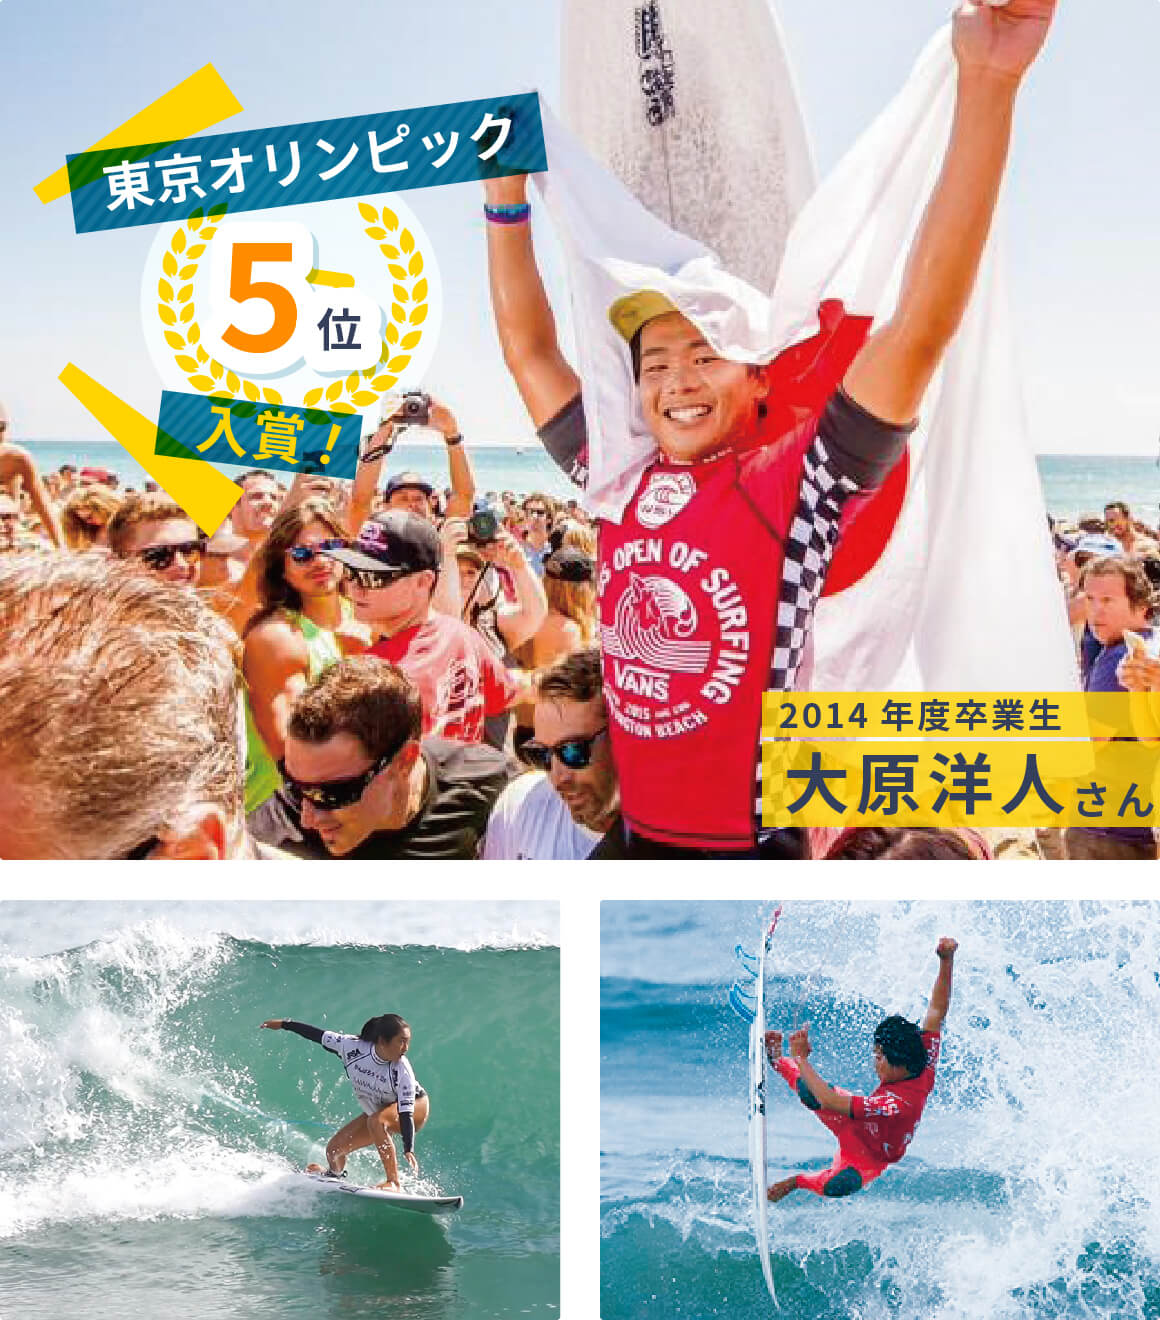 サーフィン部 東京オリンピックで5位入賞の2014年度卒業生 大原洋人さん